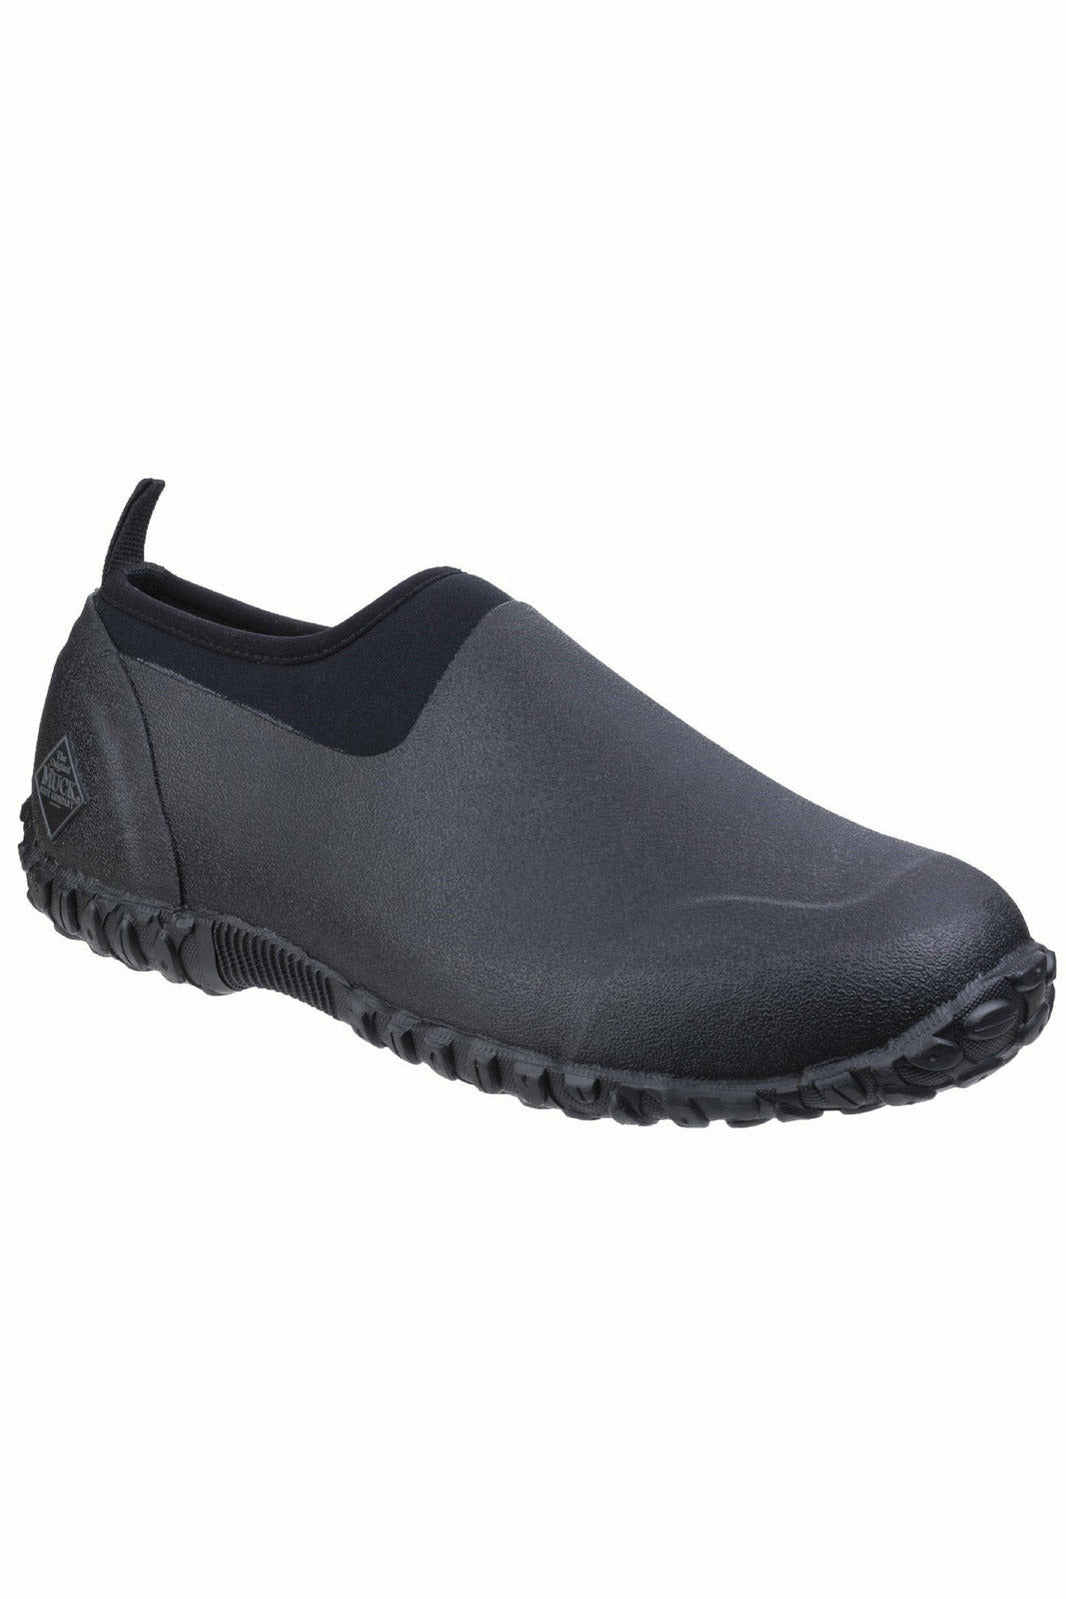 Muck Boots - Muckster II Low All Purpose Lightweight Shoe